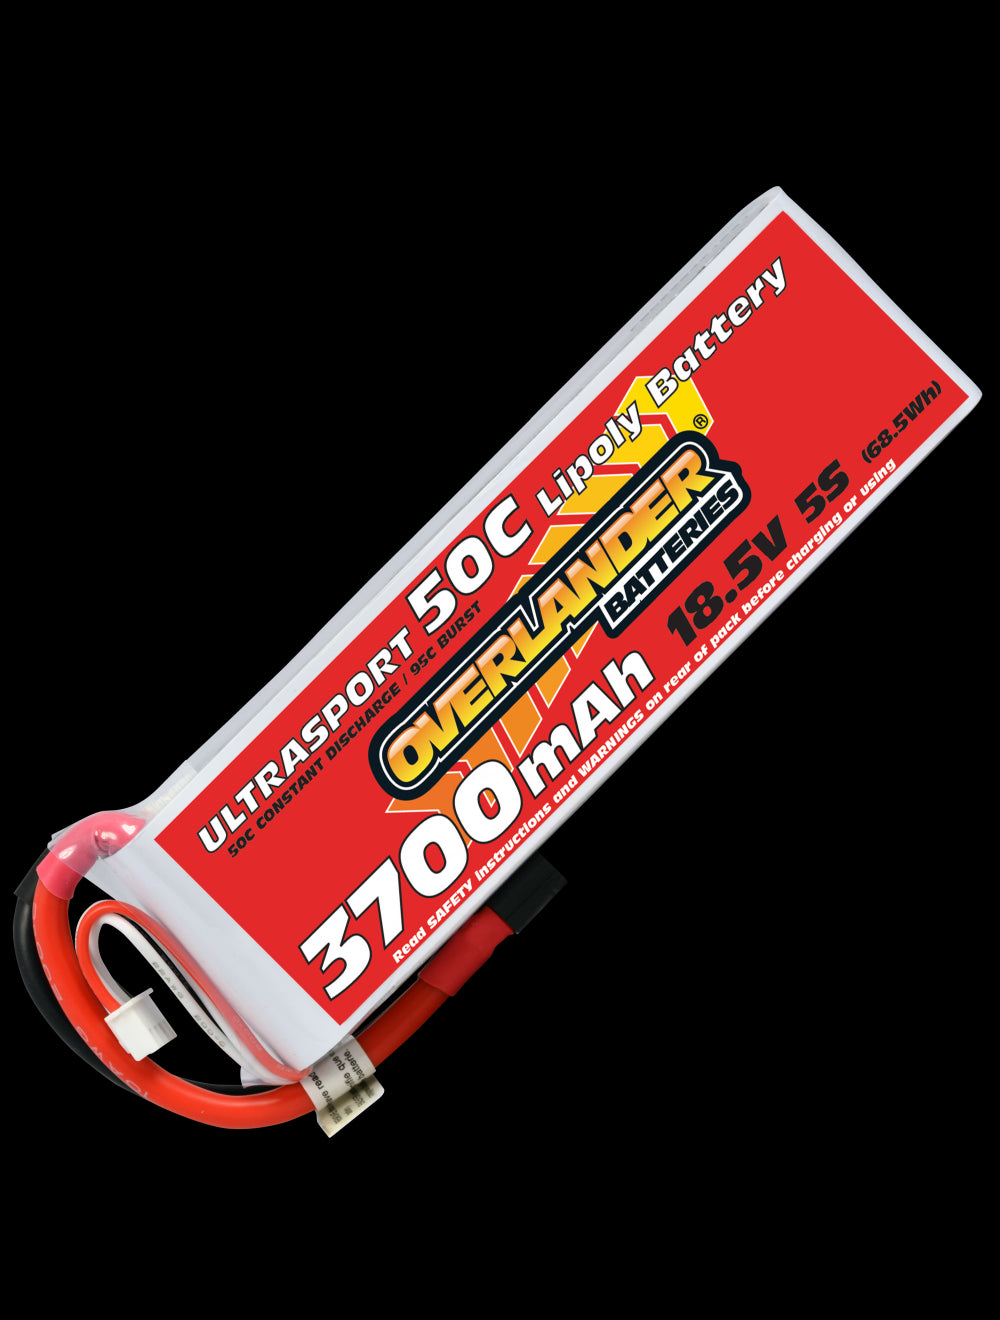 Overlander 3700mAh 18.5V 5S 50C Ultrasport LiPo Battery - EC3 Connector 3225